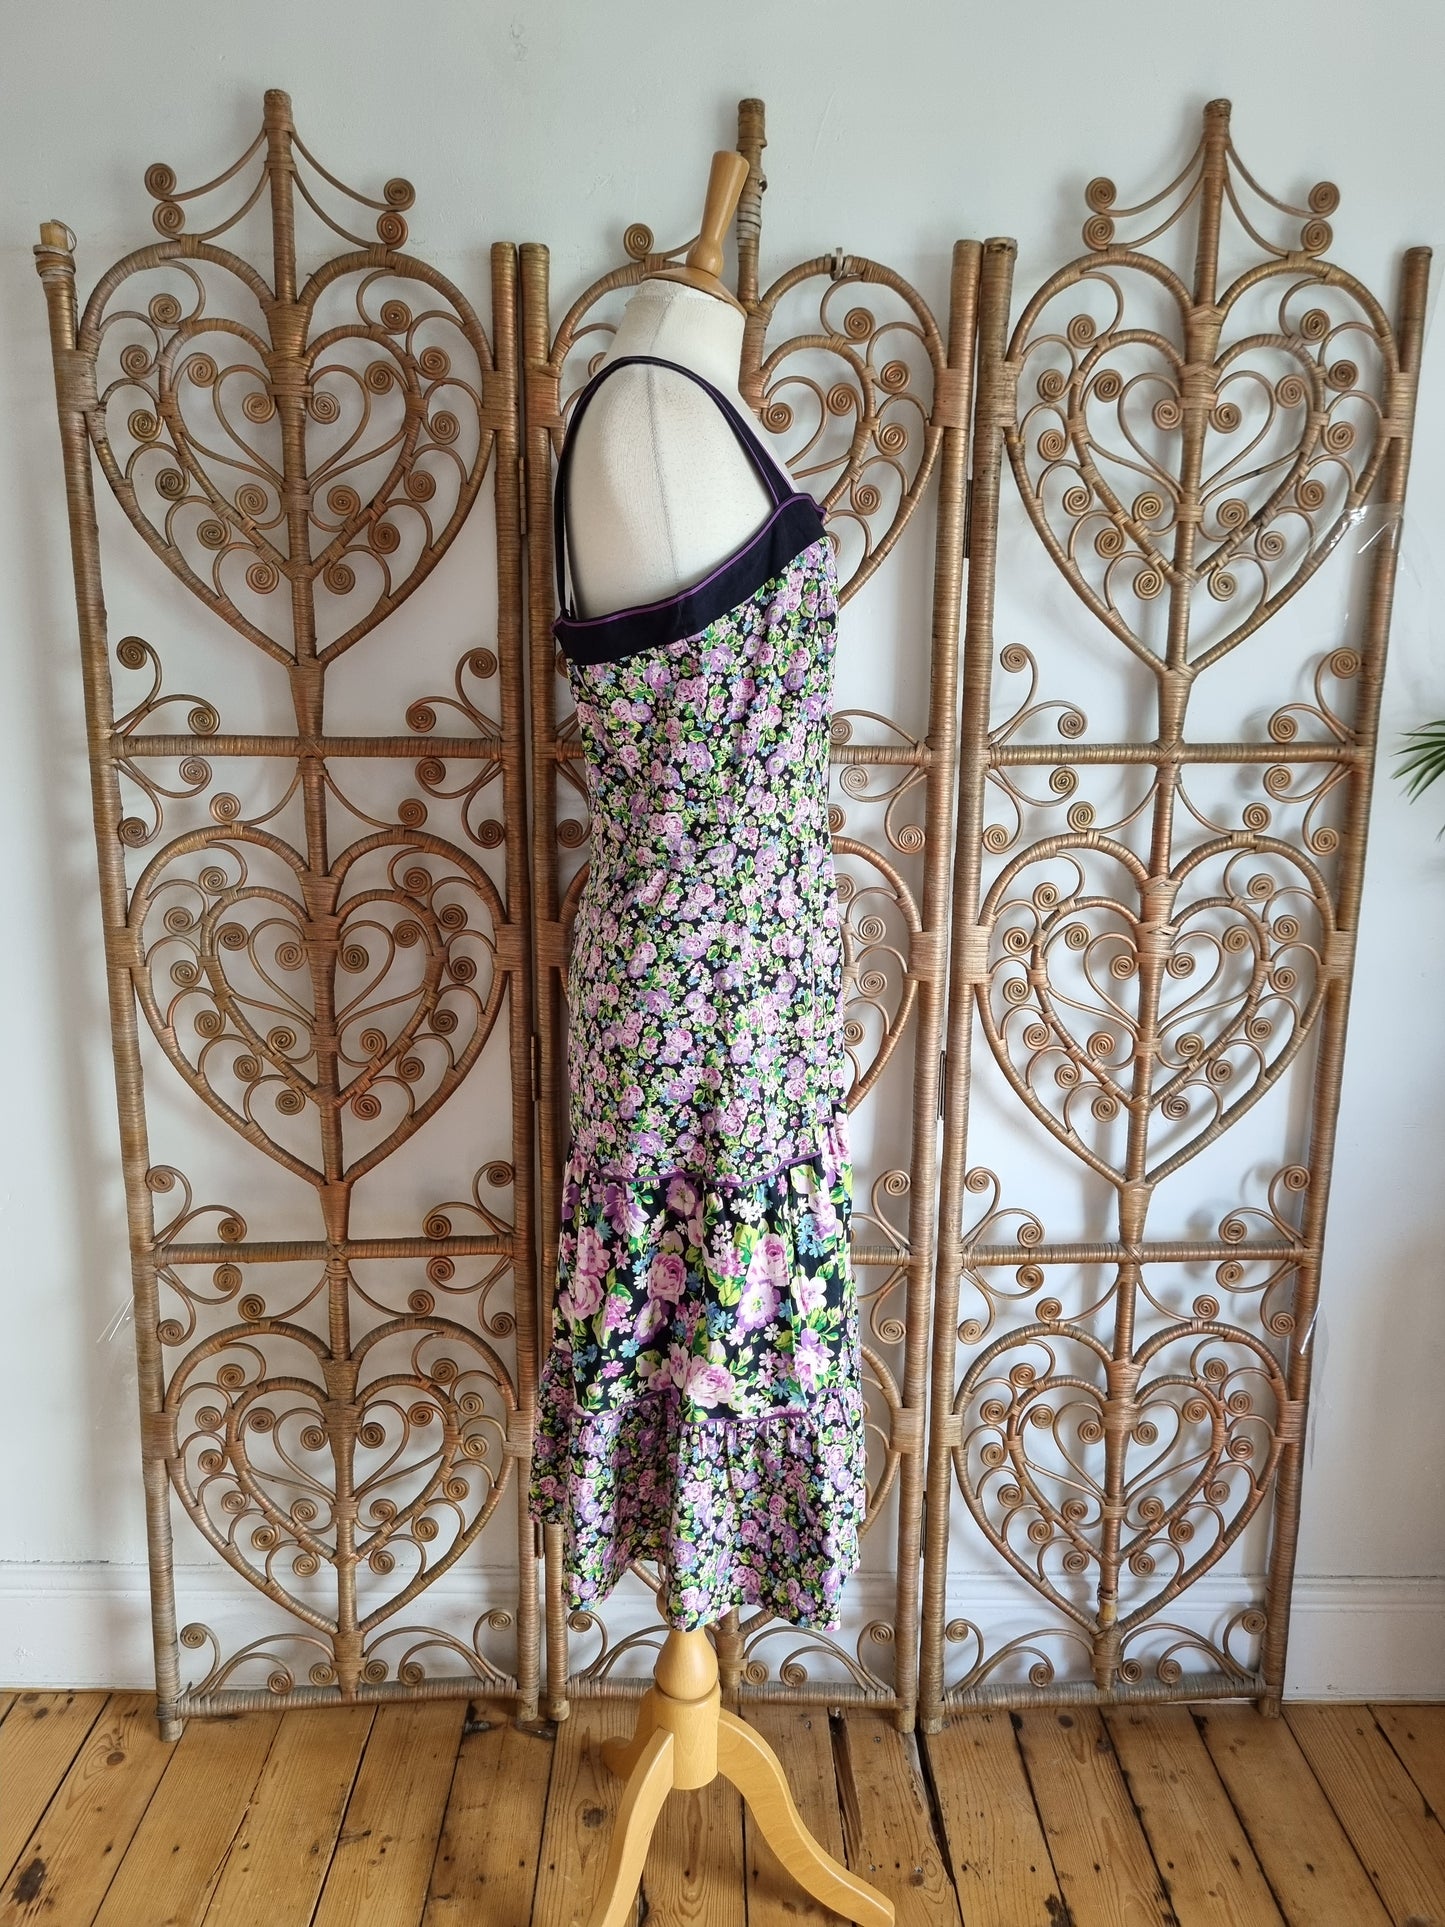 Vintage floral cotton sun dress M